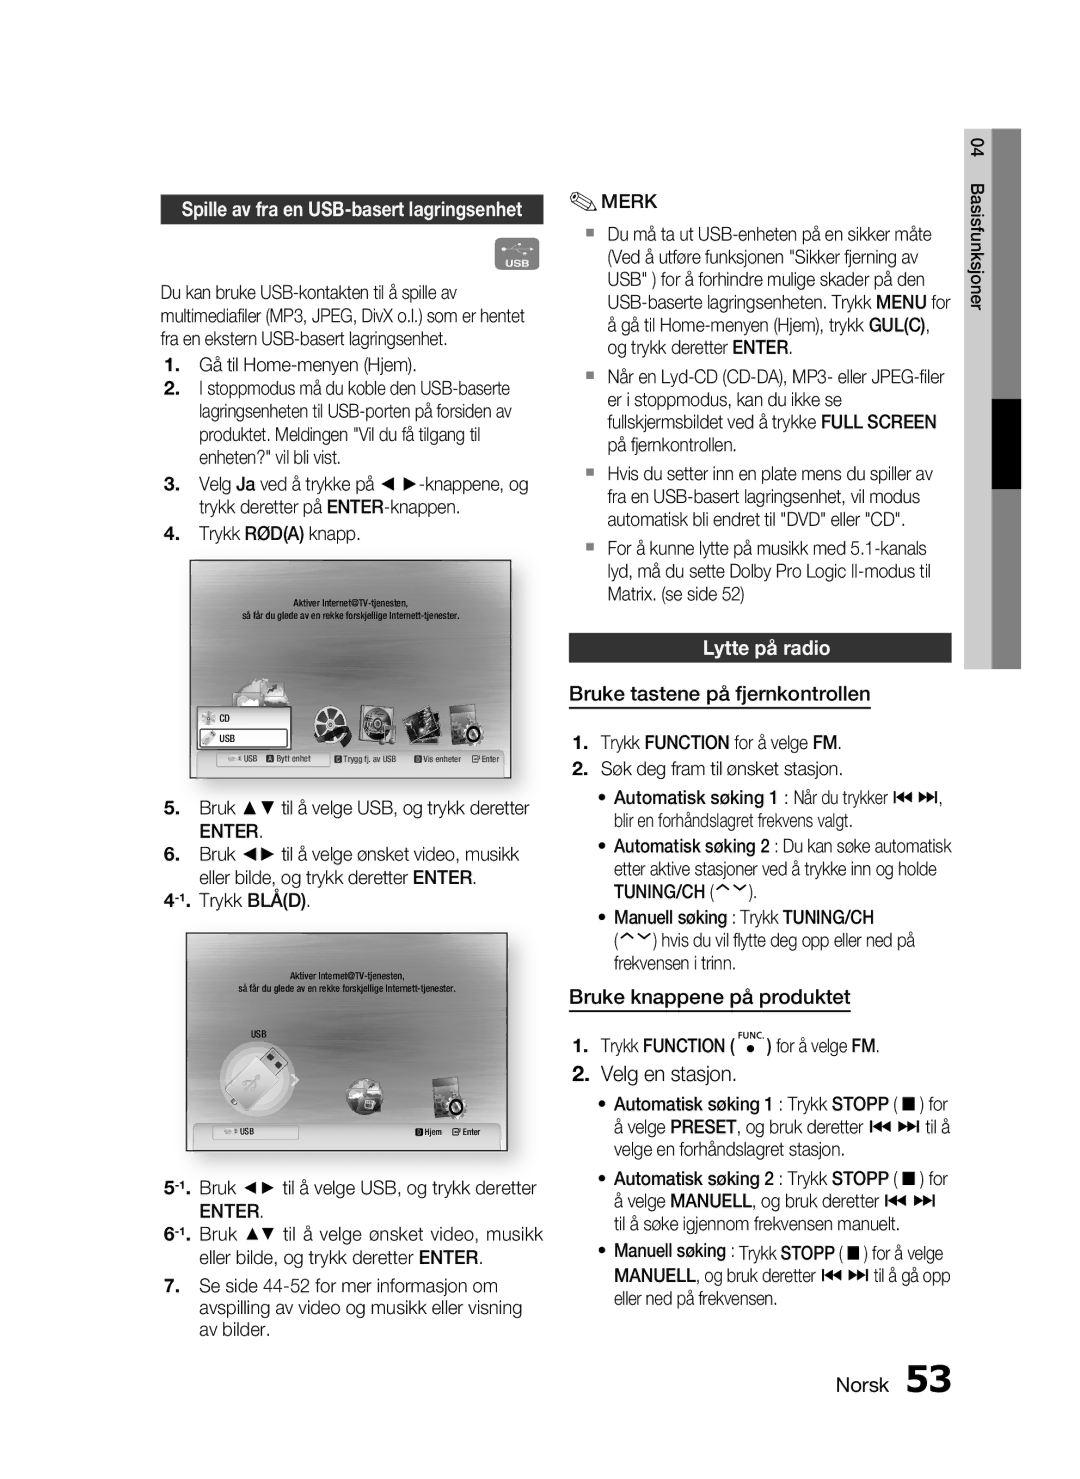 Samsung HT-C5530/XEE manual Lytte på radio, Bruke tastene på fjernkontrollen, Bruke knappene på produktet, Tuning/Ch 